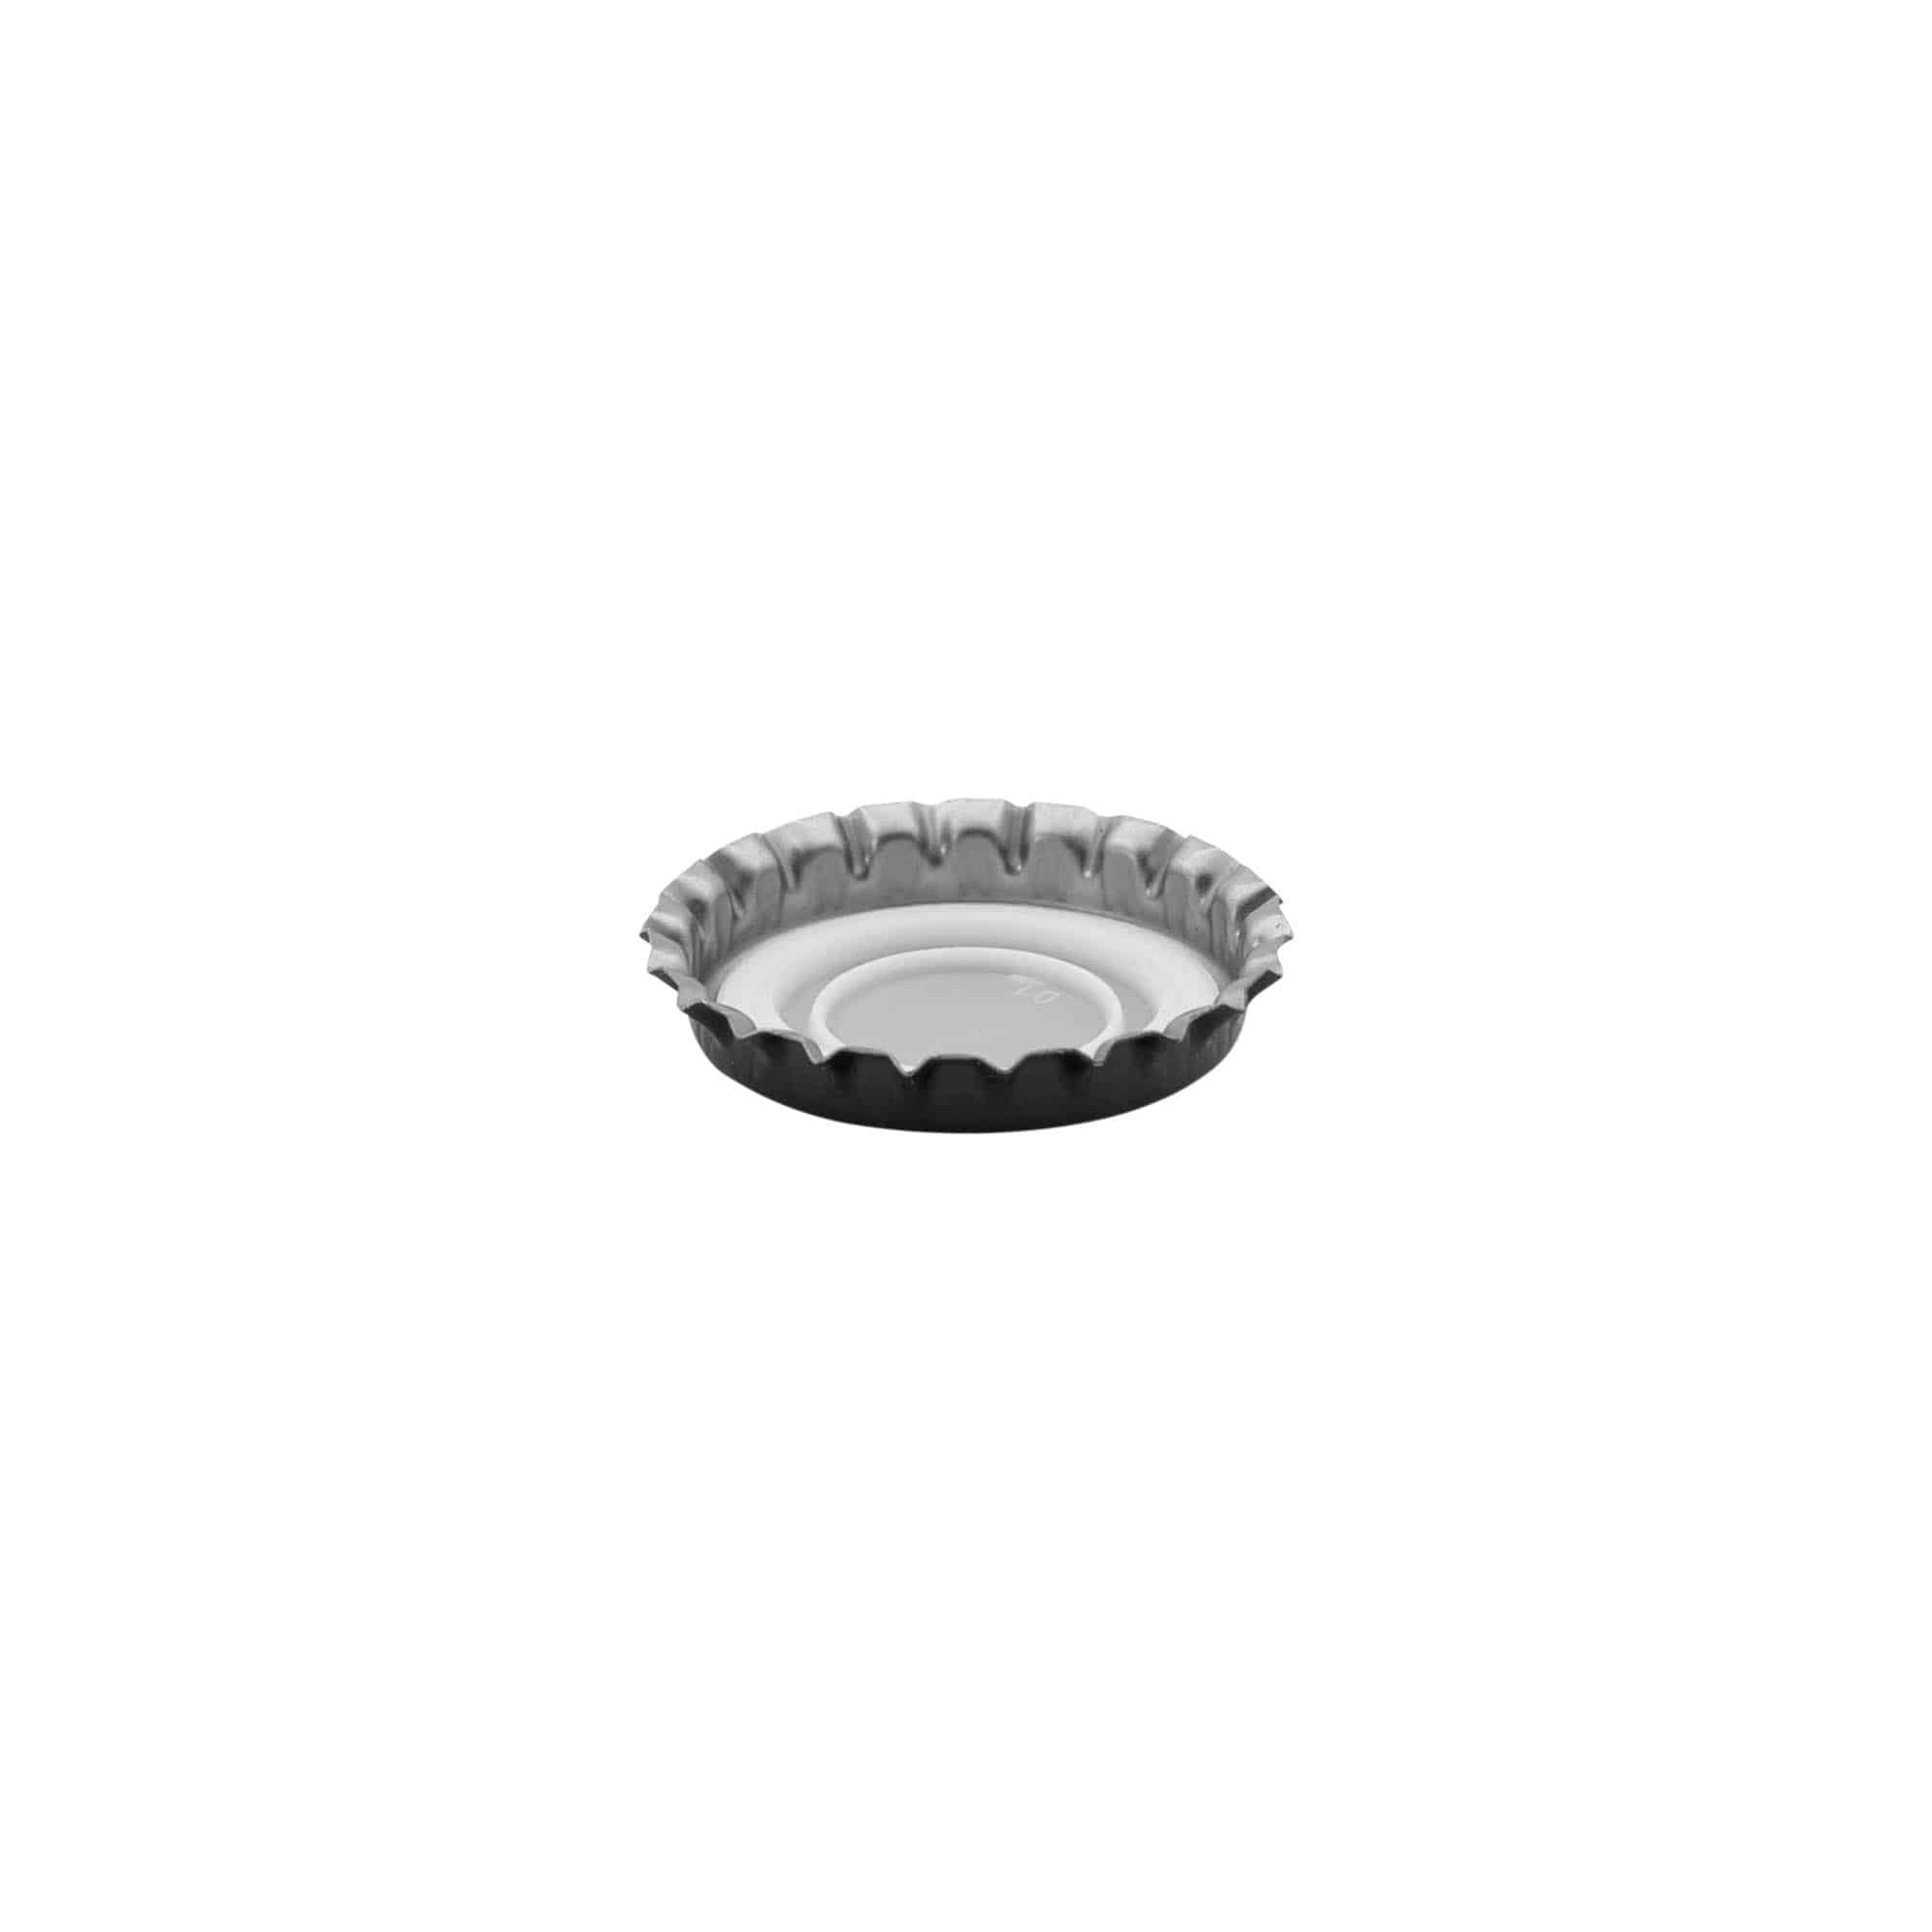 Tappo a corona 29 mm, metallo, argento, nero